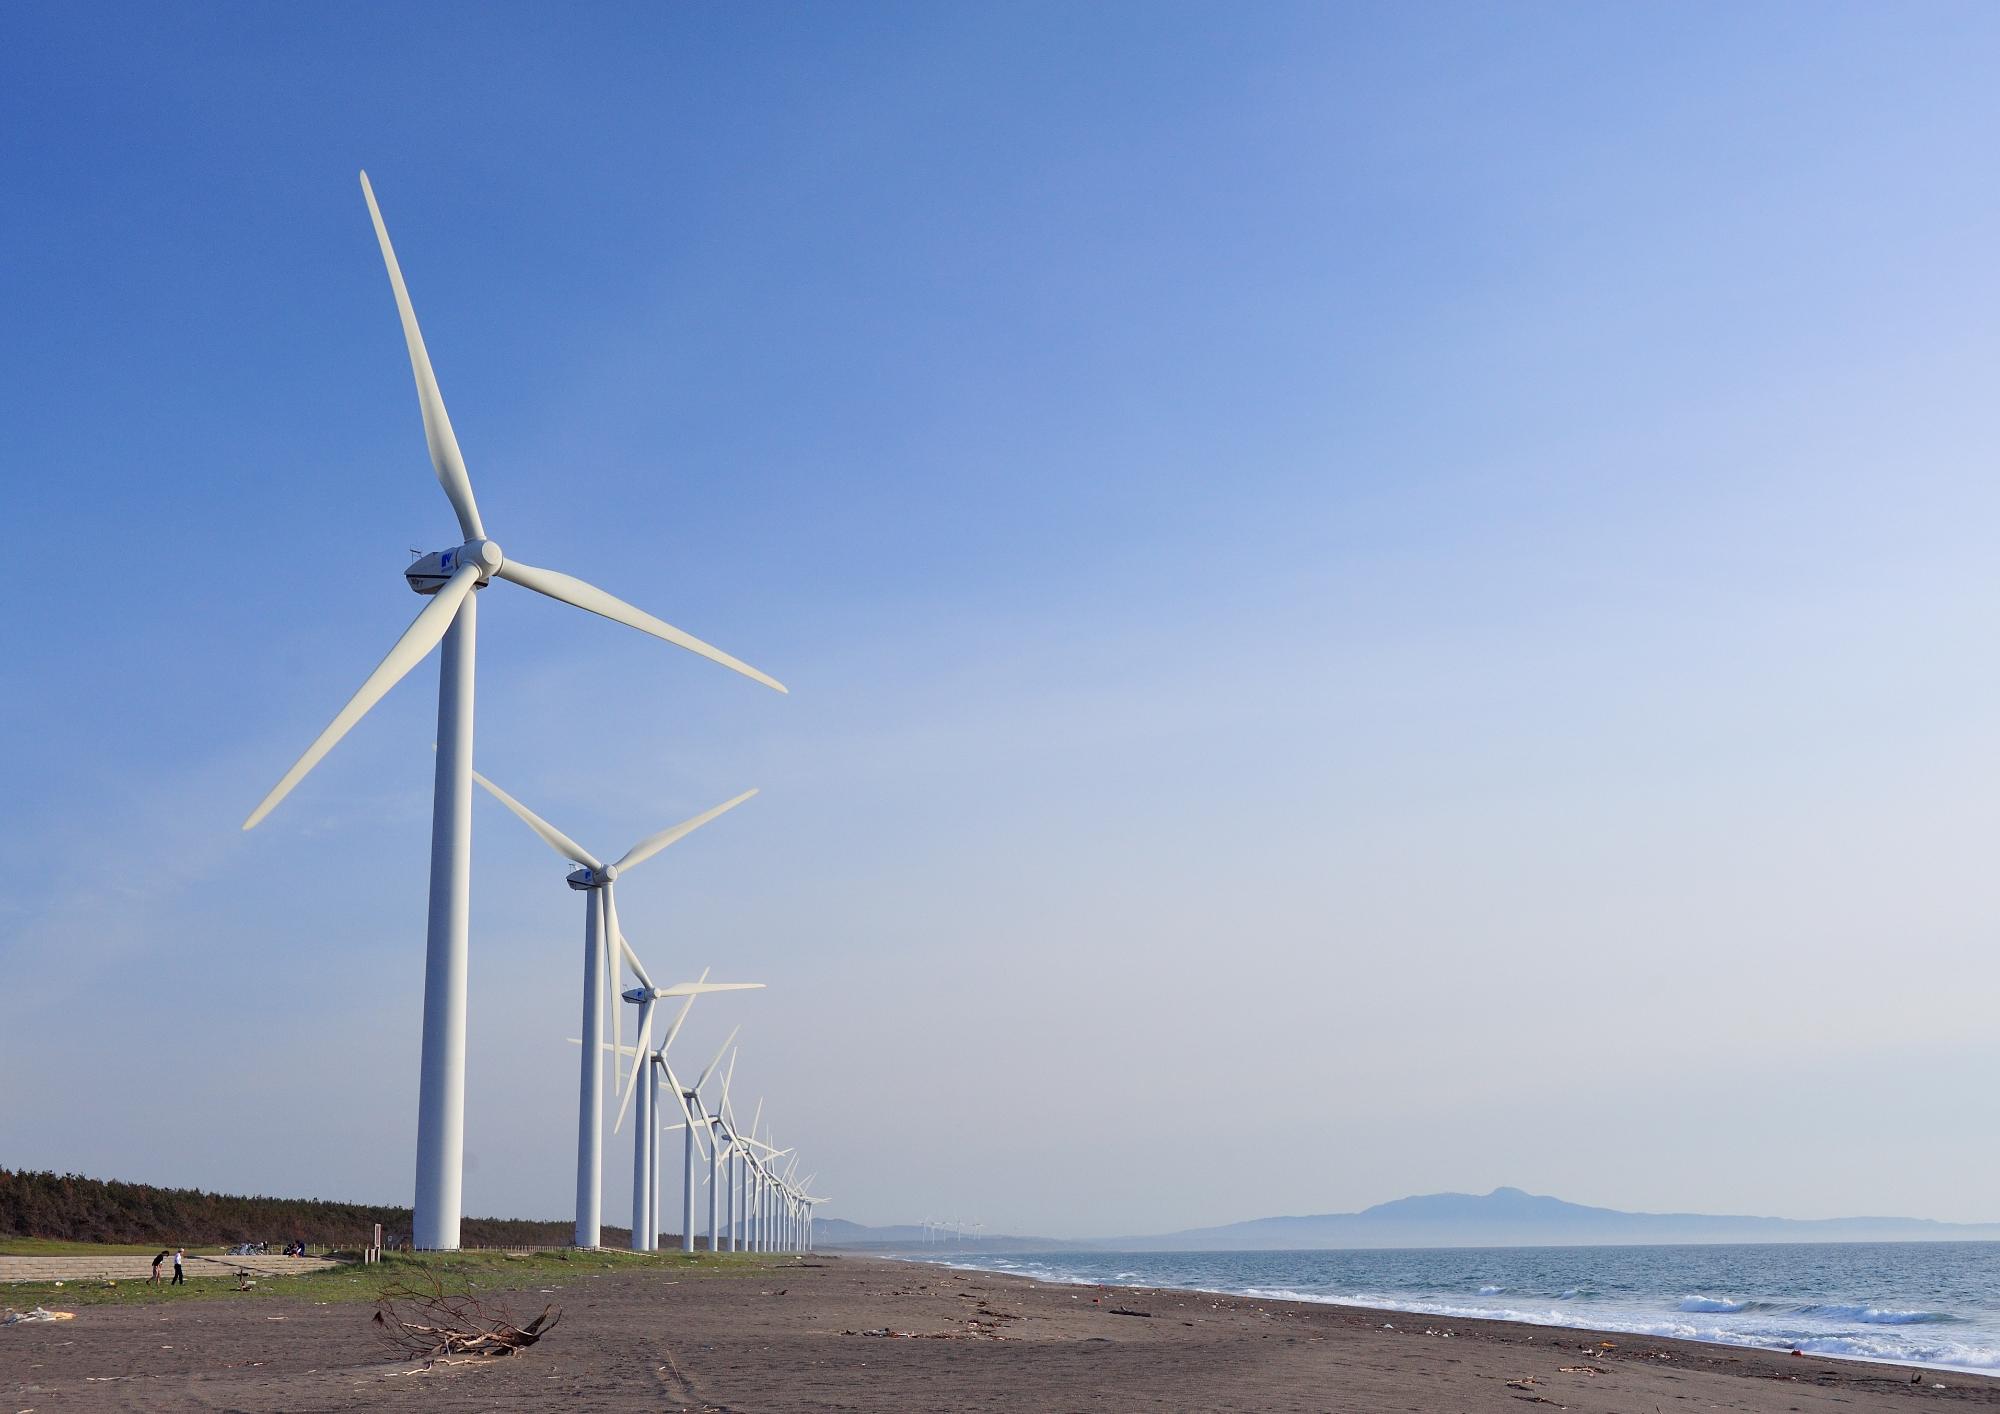 3枚の羽根がある大きな風力発電装置が海辺に並んでいる写真